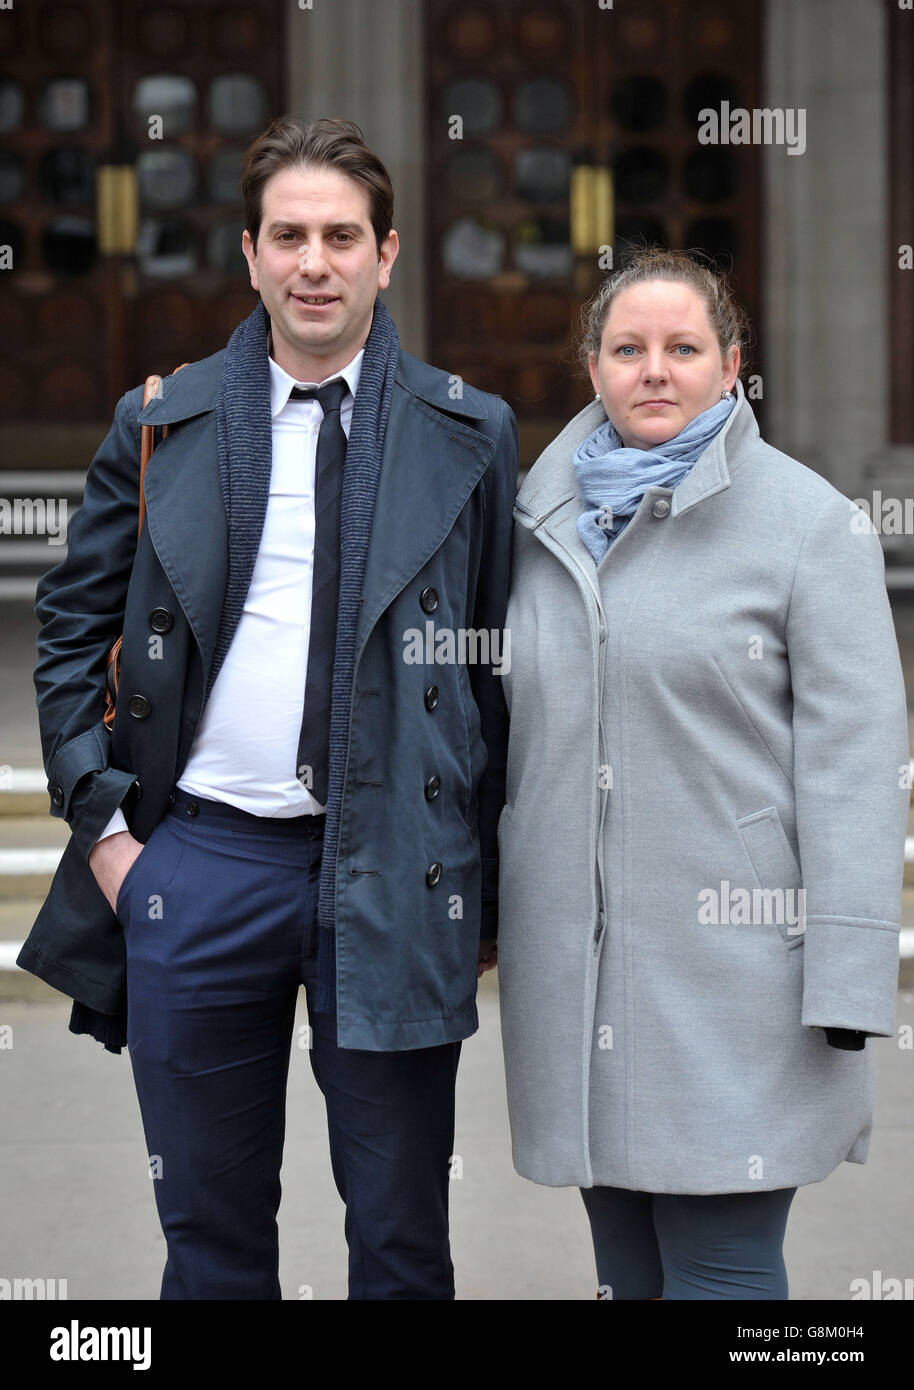 Charles Keidan, 39, and Rebecca Steinfeld, 34, outside the High Court ...